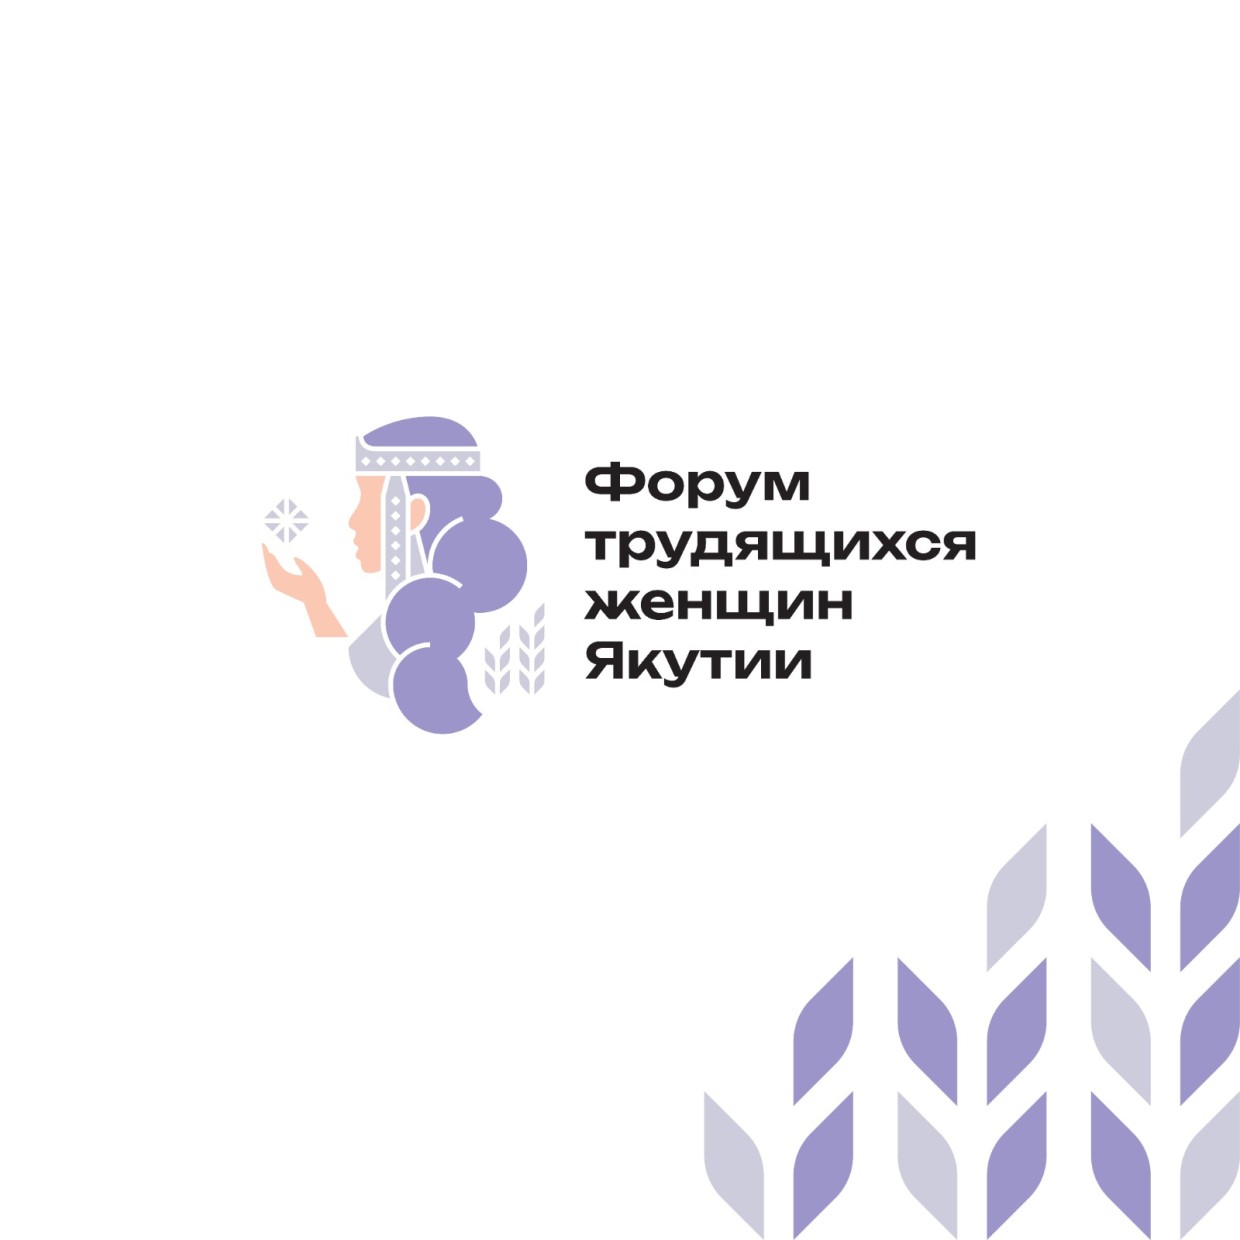 В Якутске состоится Форум трудящихся женщин Якутии